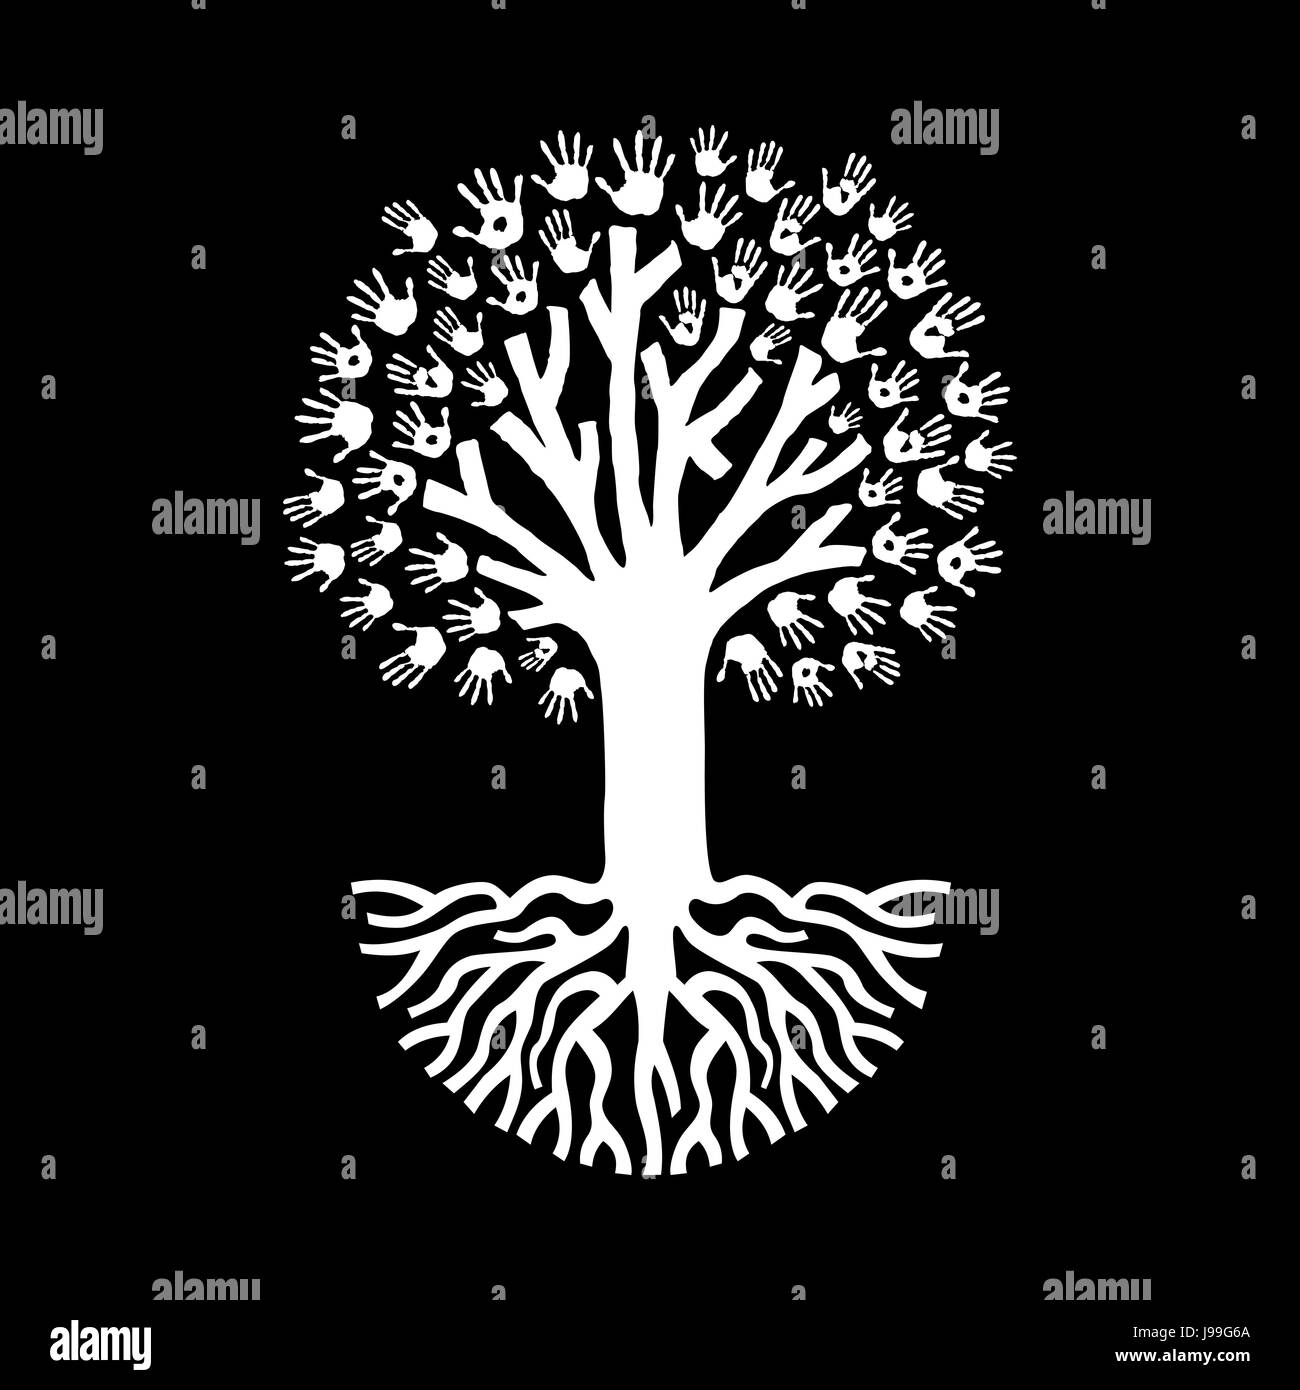 Plus isolé de l'arbre noir fait de diverses impressions à la main avec de grosses racines. L'aide communautaire ou d'équipe concept illustration. Vecteur EPS10. Illustration de Vecteur